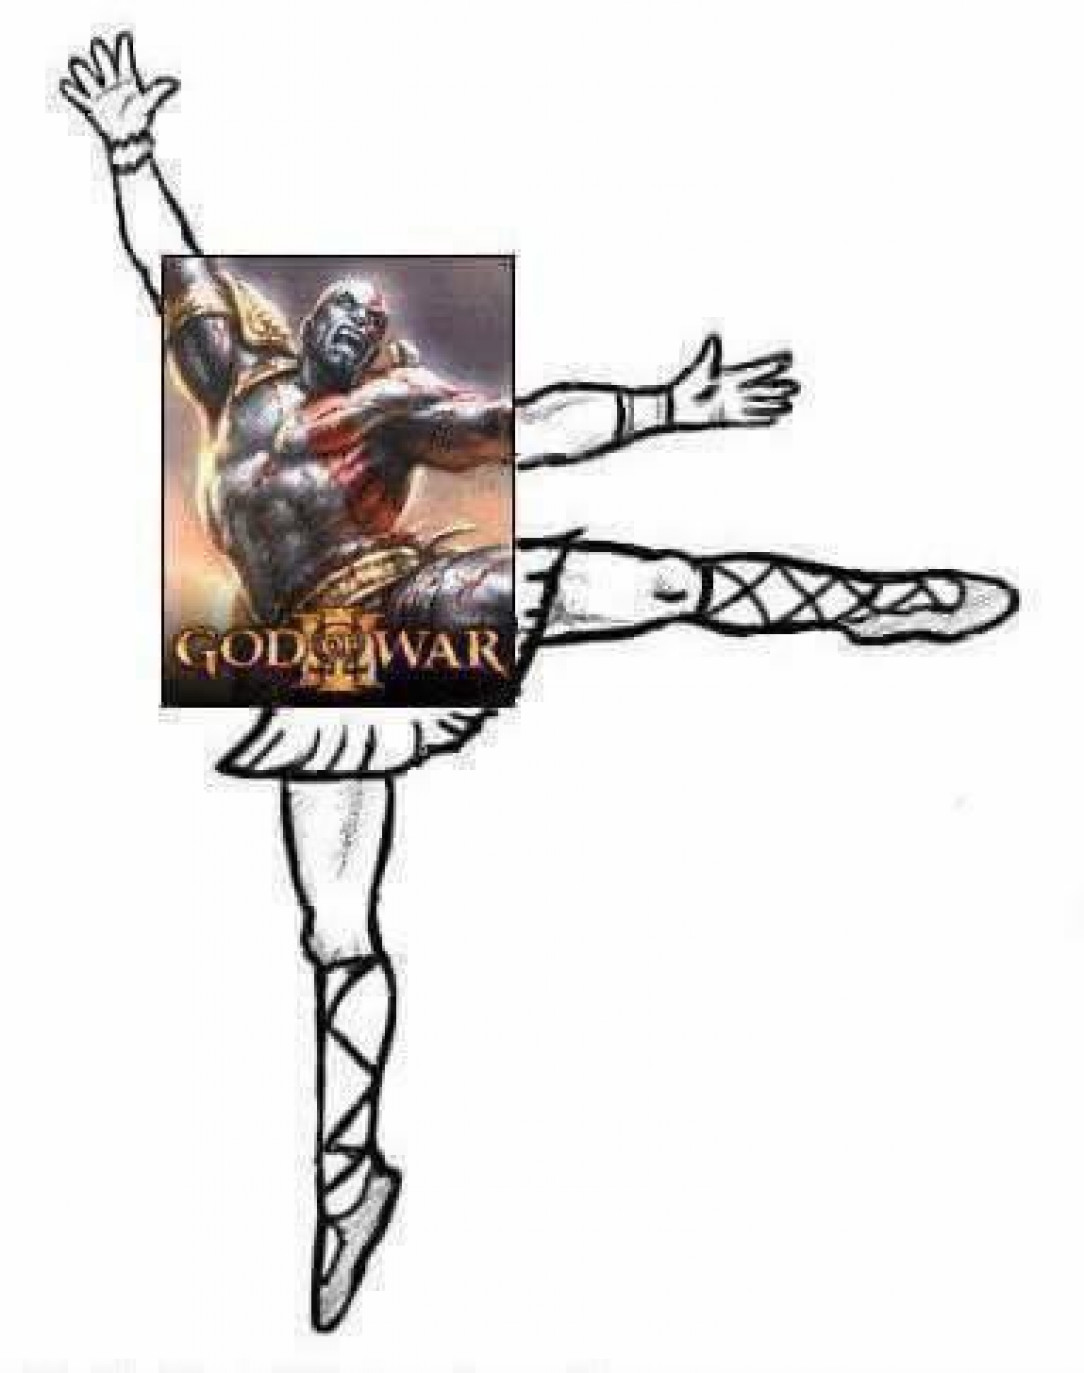 Kratos, The War God of Ballets